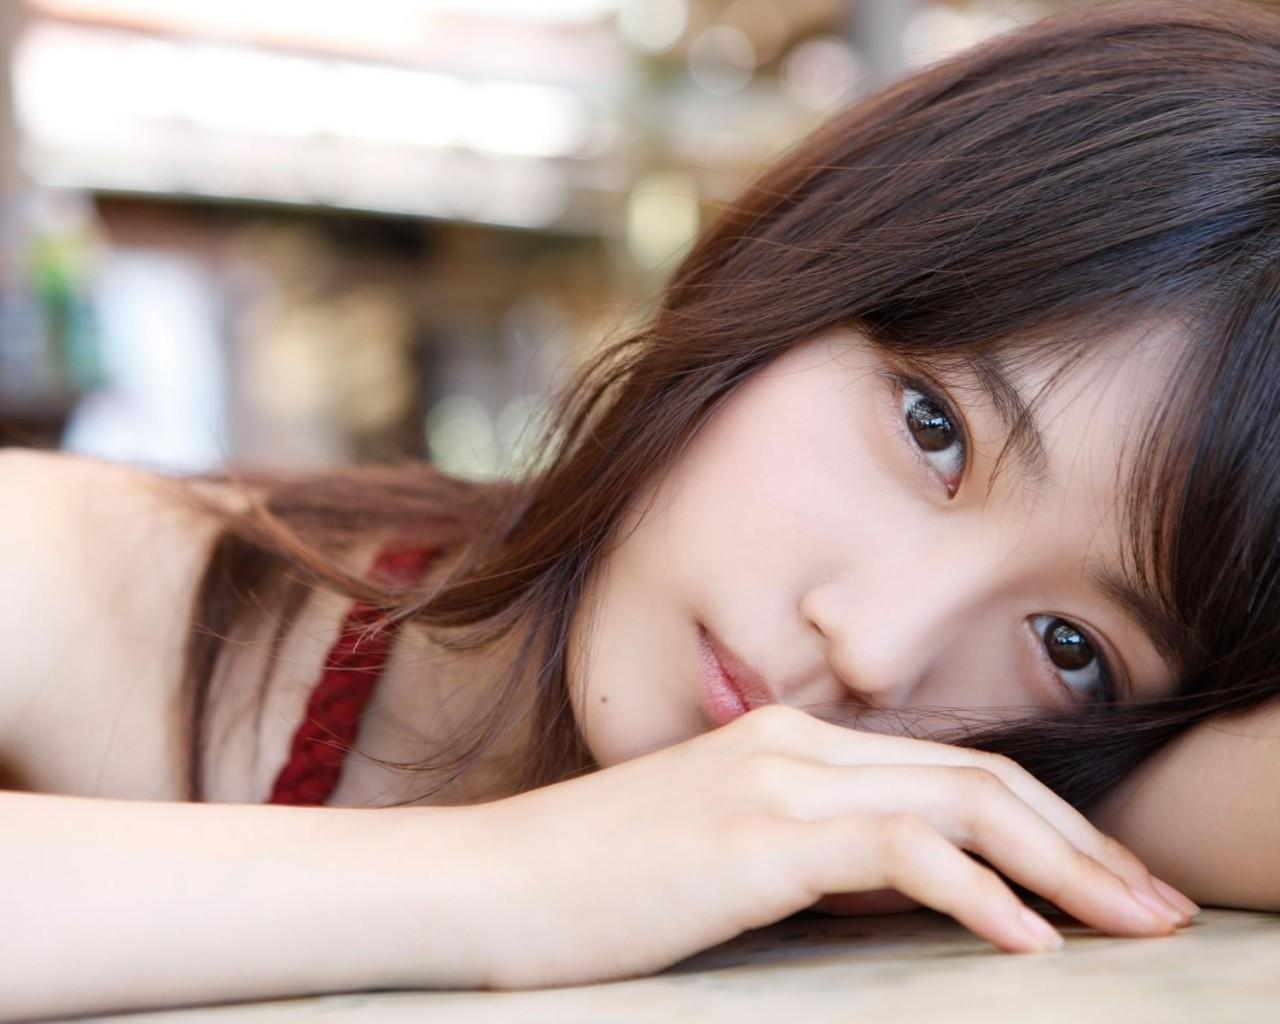 Download 1280x1024 Arimura Kasumi, Actress, Japanese Women, Close Up